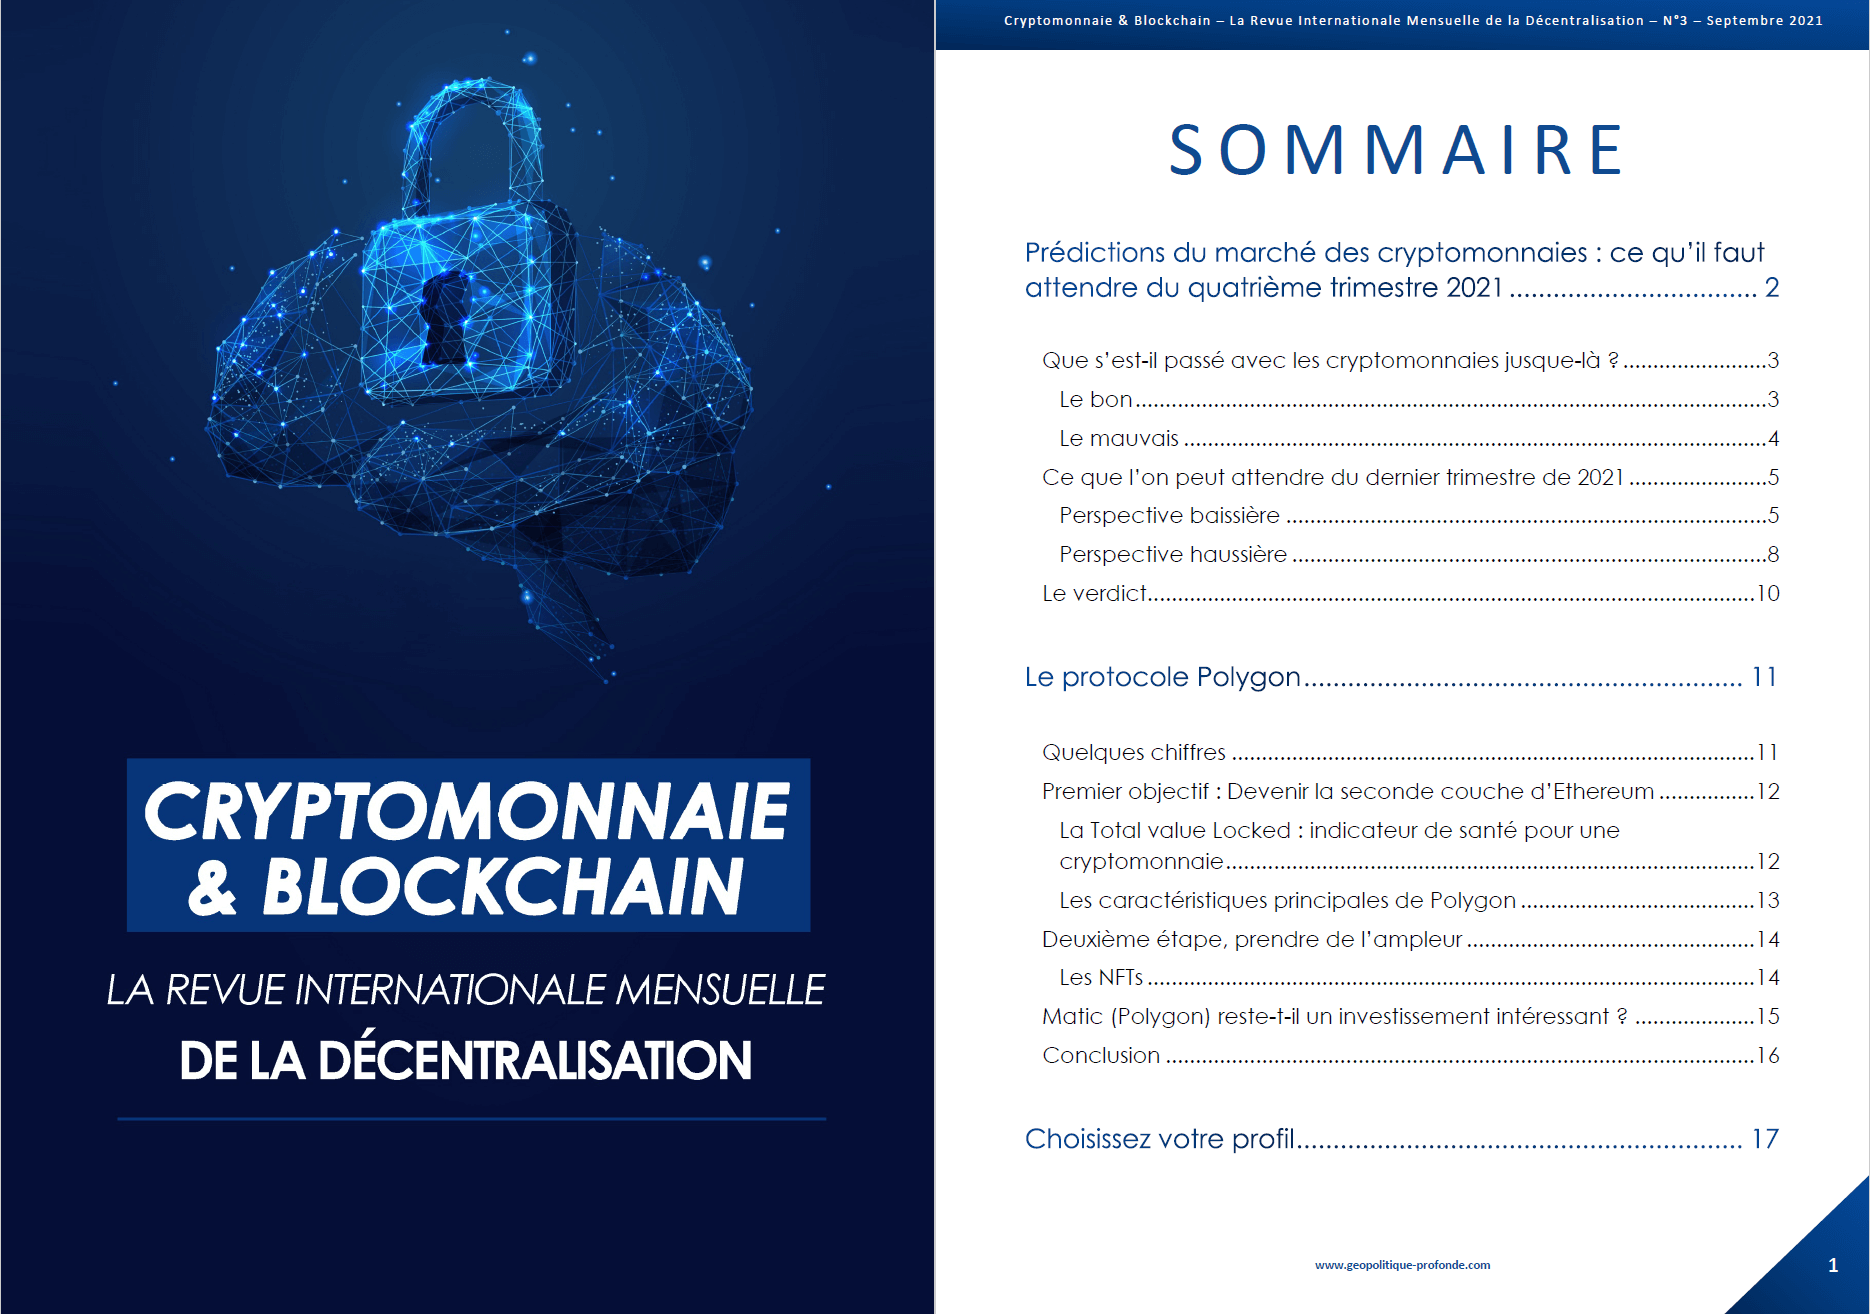 Cryptomonnaie & Blockchain revue mensuelle septembre 2021